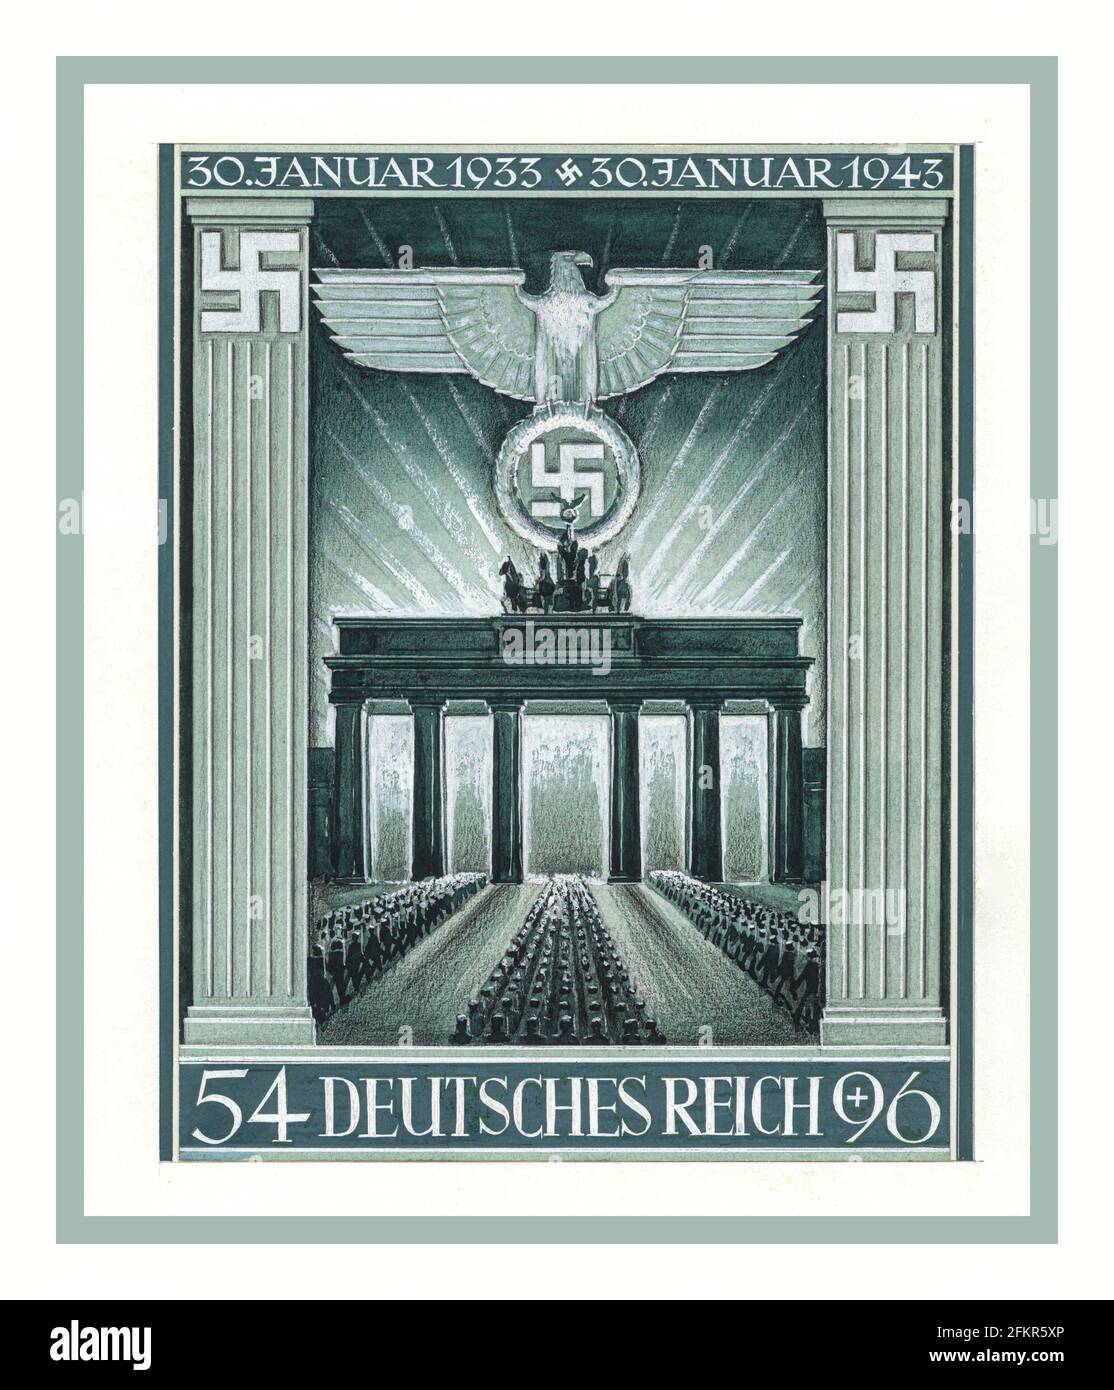 Vintage art stamp préparé Nazi propaganda Porte de Brandebourg Berlin Allemagne nazie 10e anniversaire de la prise du pouvoir par Hitler nazi d'art pour 1933-1943 Deutsches Reich timbre premier jour d'émission Jan 1943 Graphiques par G. Klein Banque D'Images